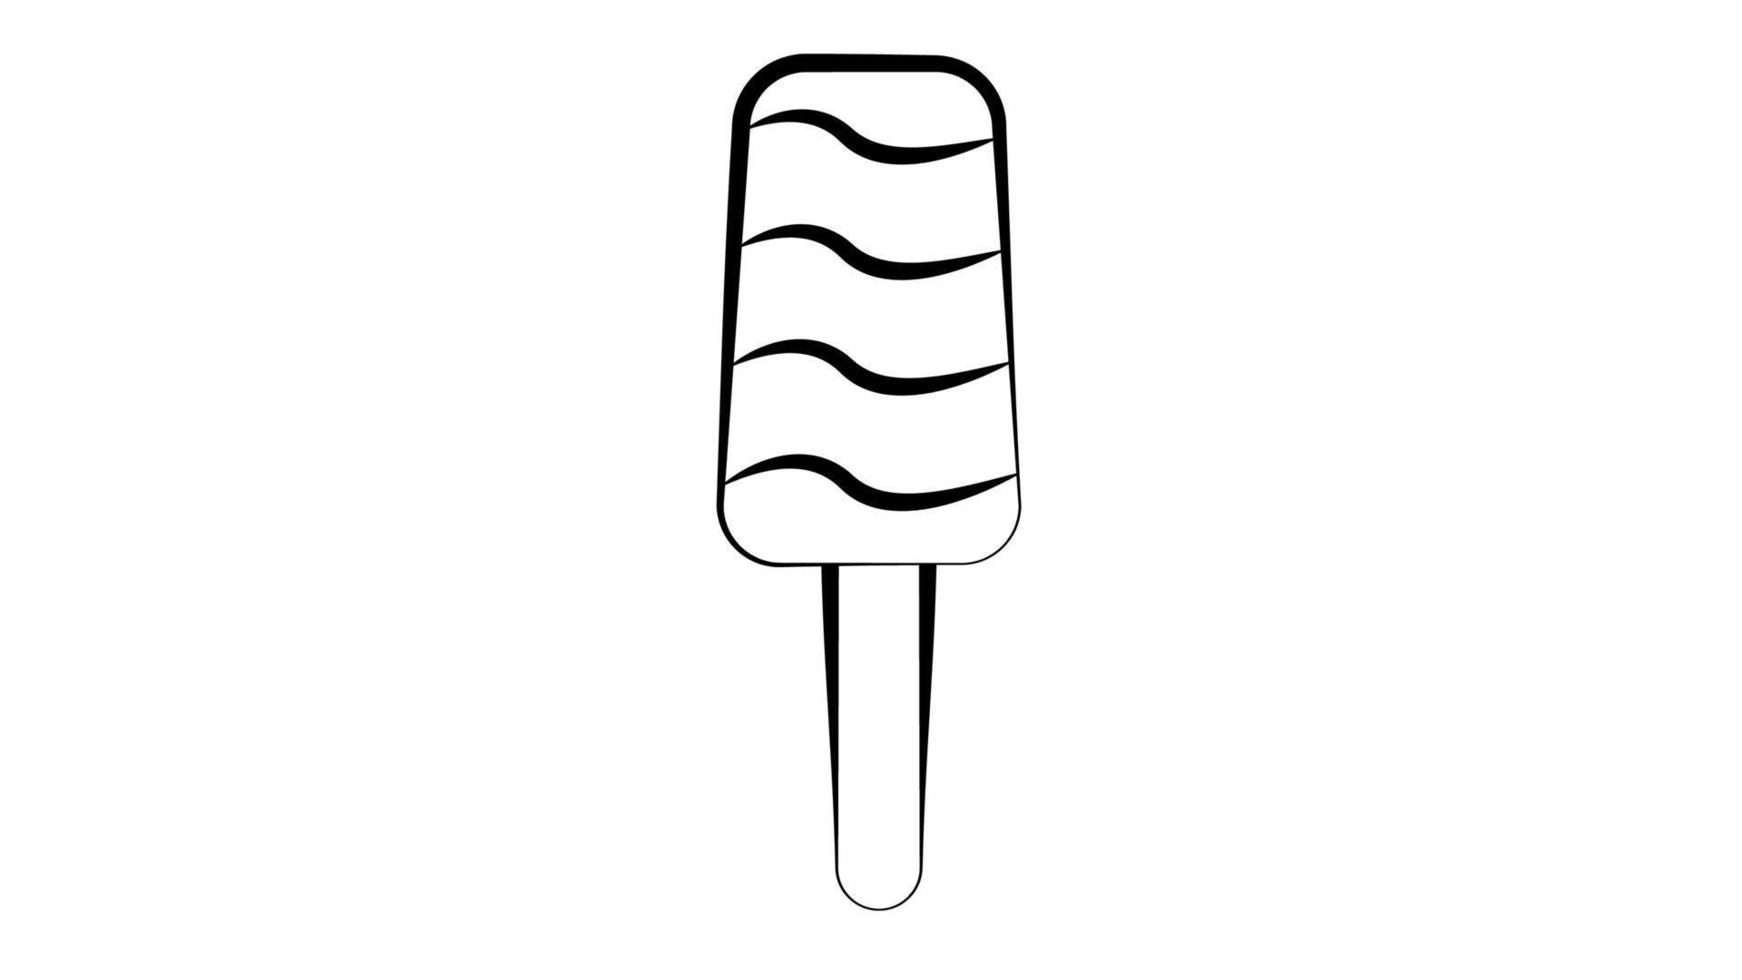 helado de paleta en un palo sobre un fondo blanco, ilustración vectorial. apetitoso postre blanco y negro, con cobertura de azúcar. helado de leche blanco en estilo de dibujo a lápiz vector